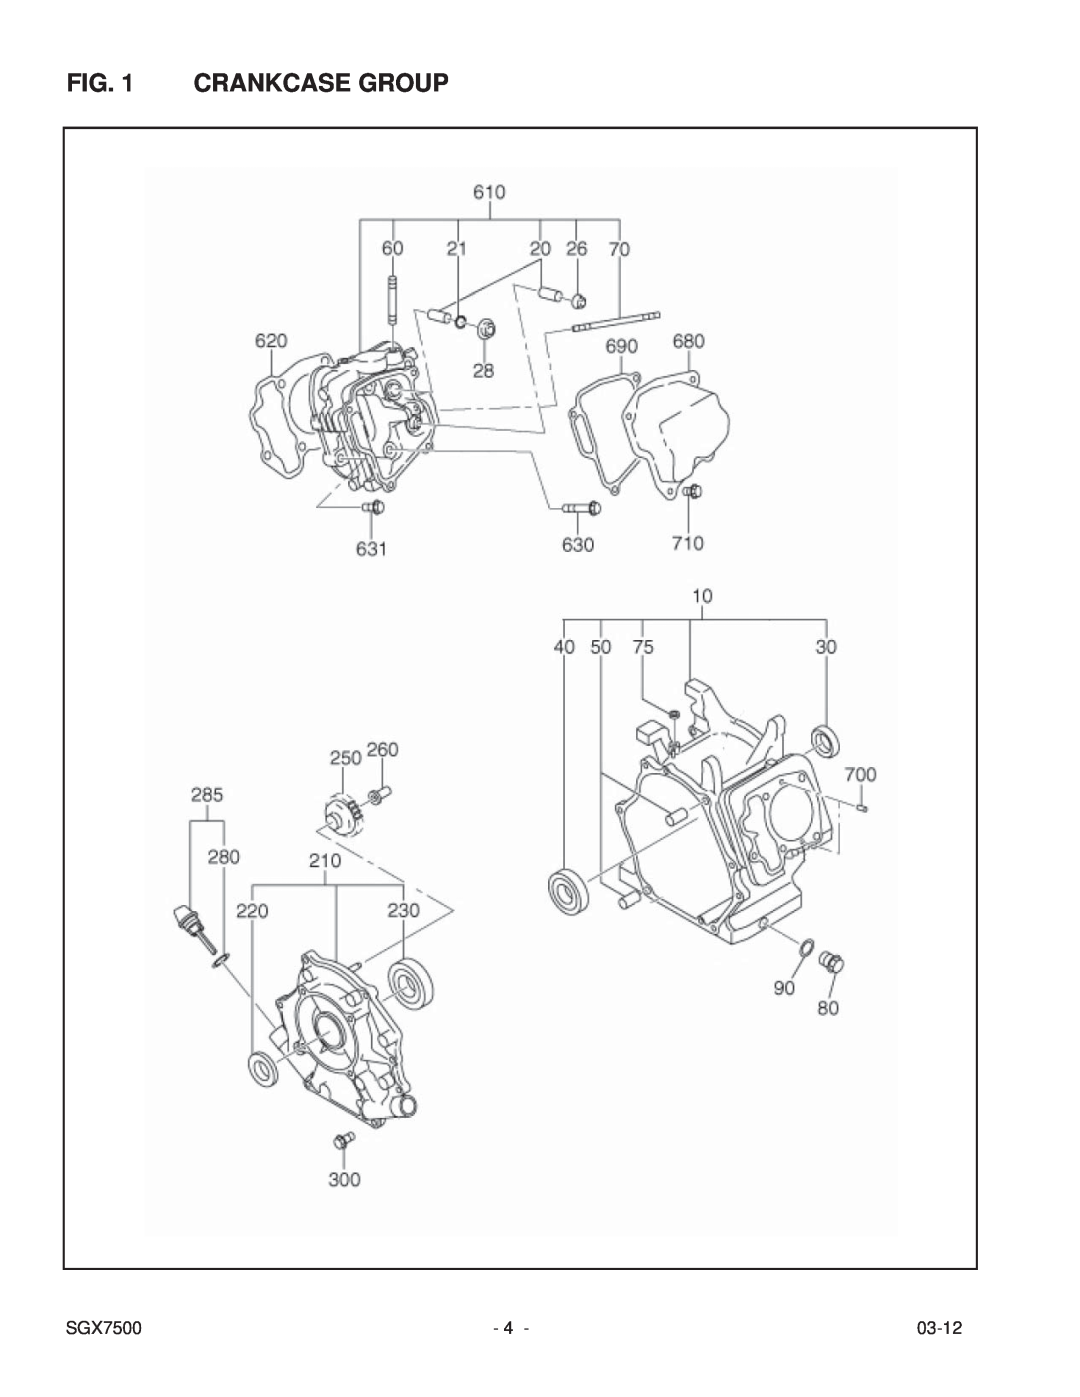 Subaru SGX7500 manual Crankcase Group, 03-12 